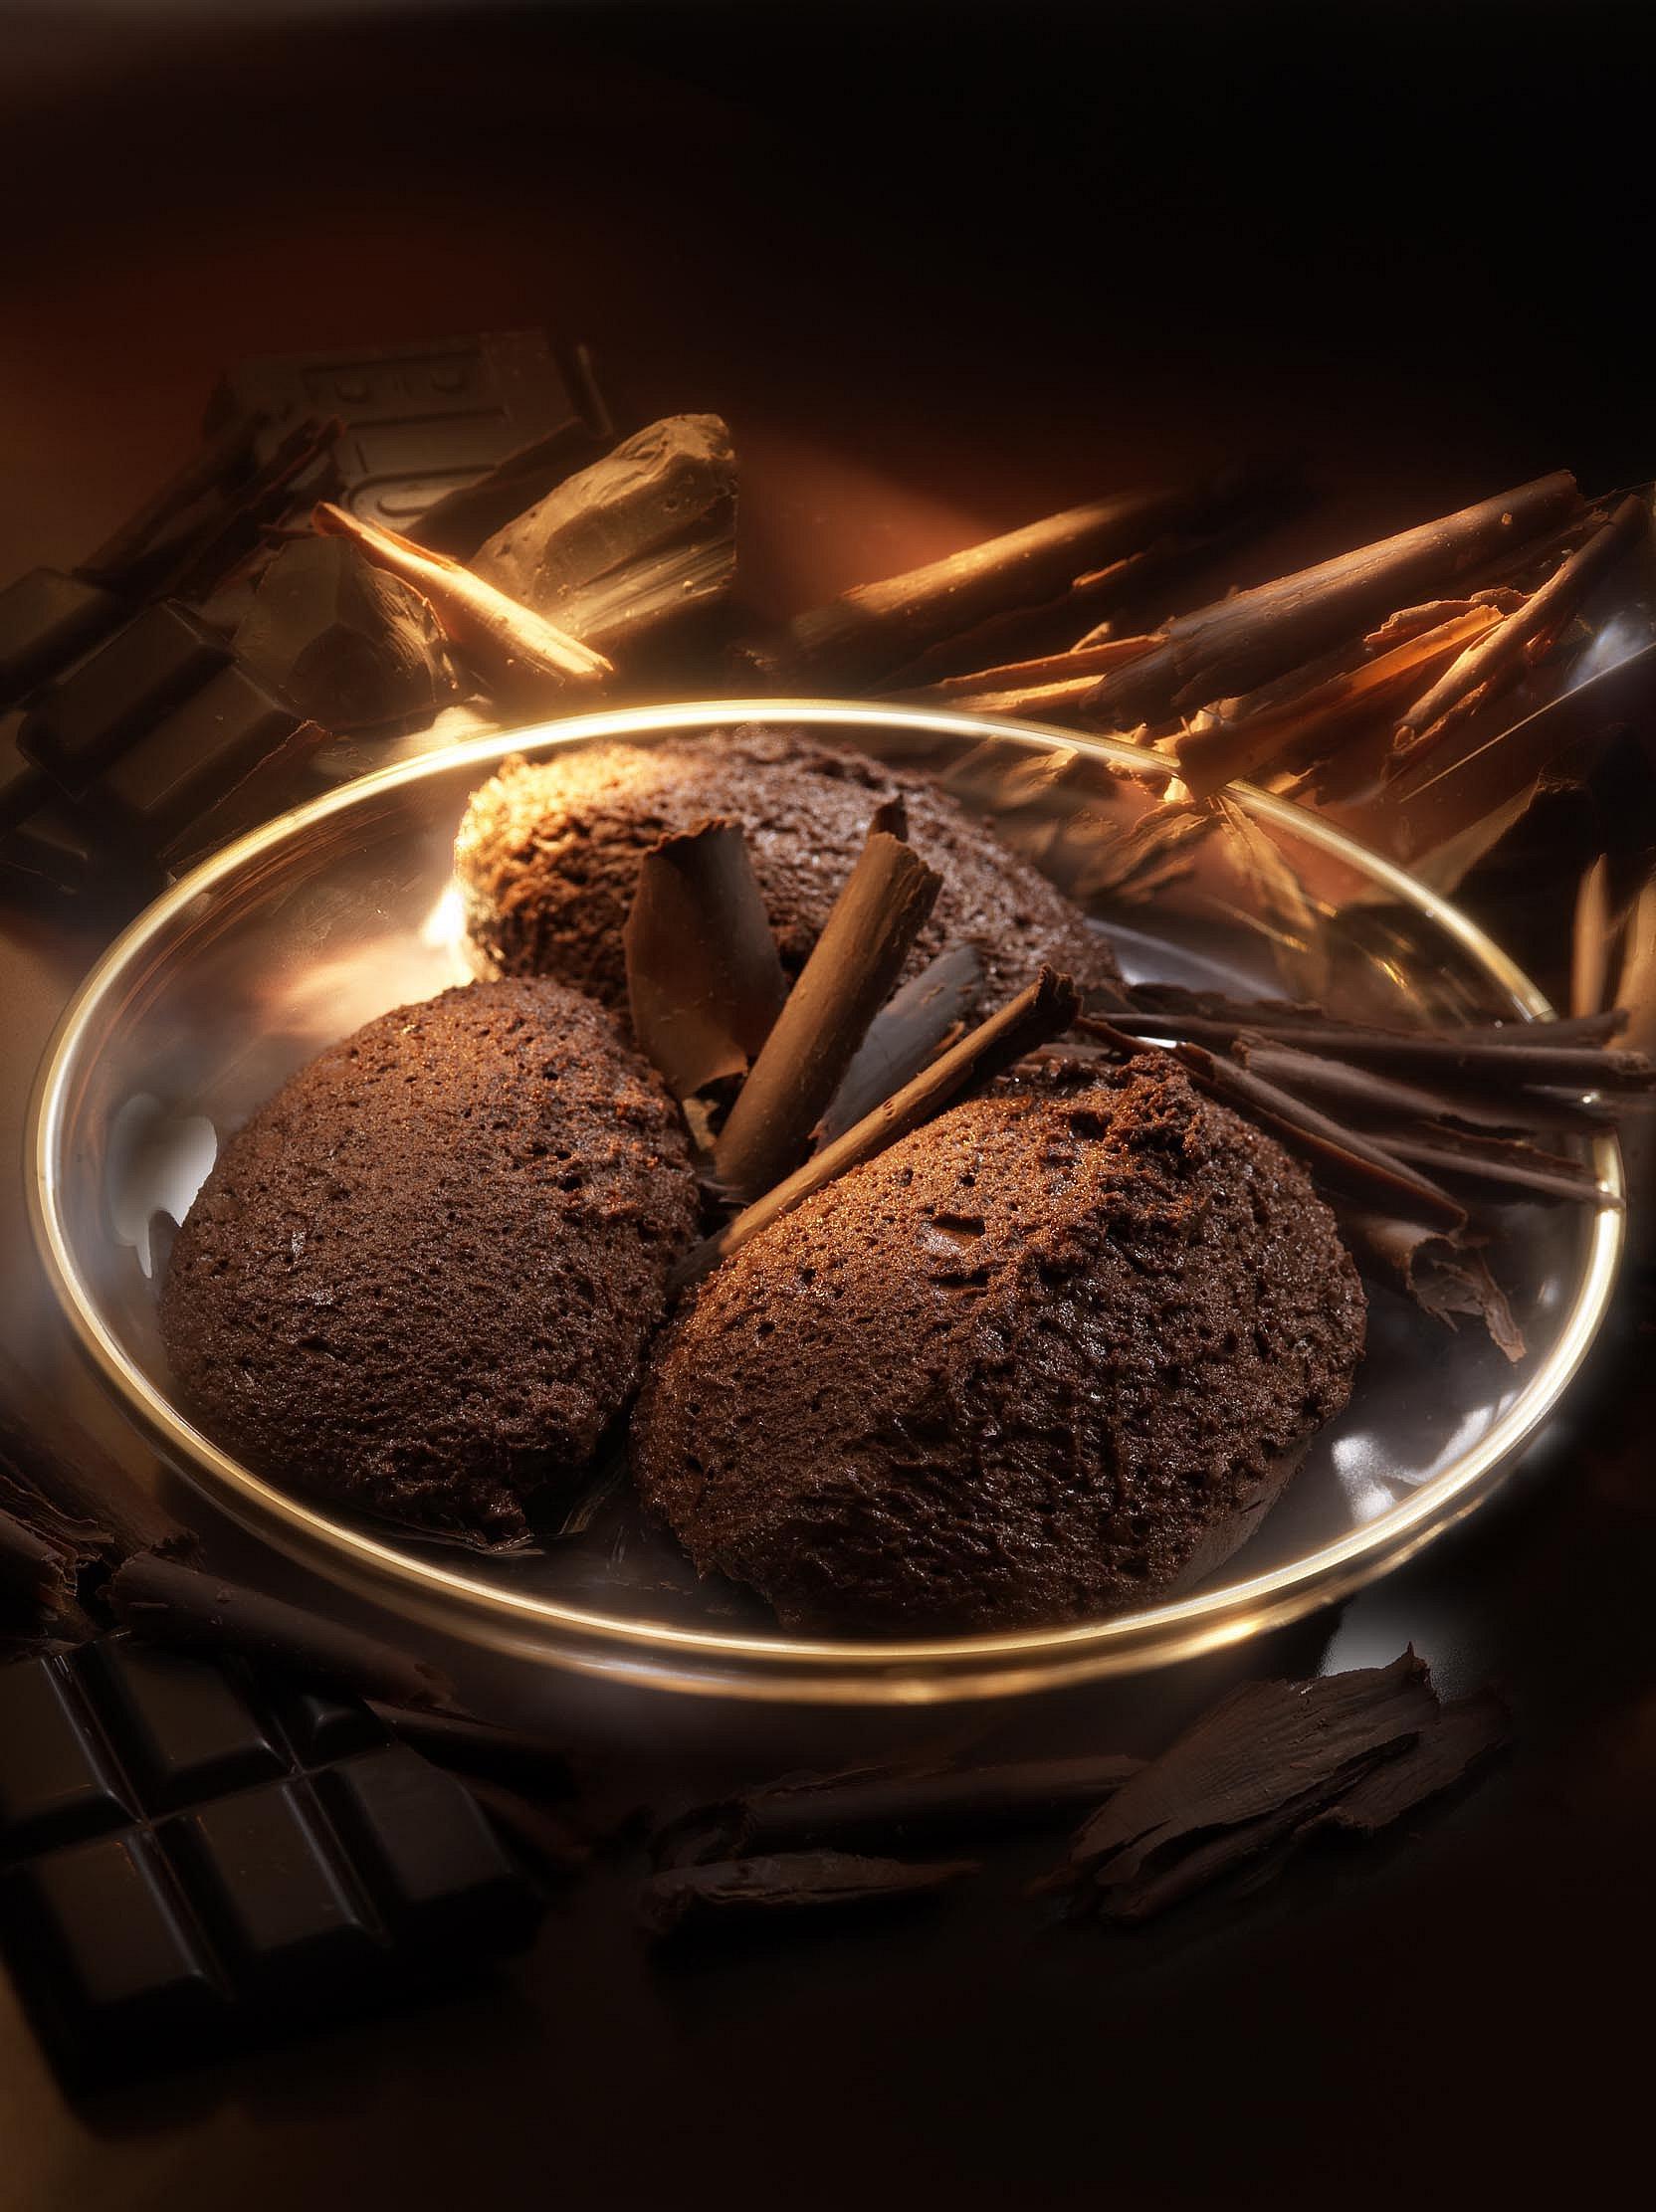 Mousse au Chocolate mit Schokoraspeln auf schmelzendem Schokoladenbett